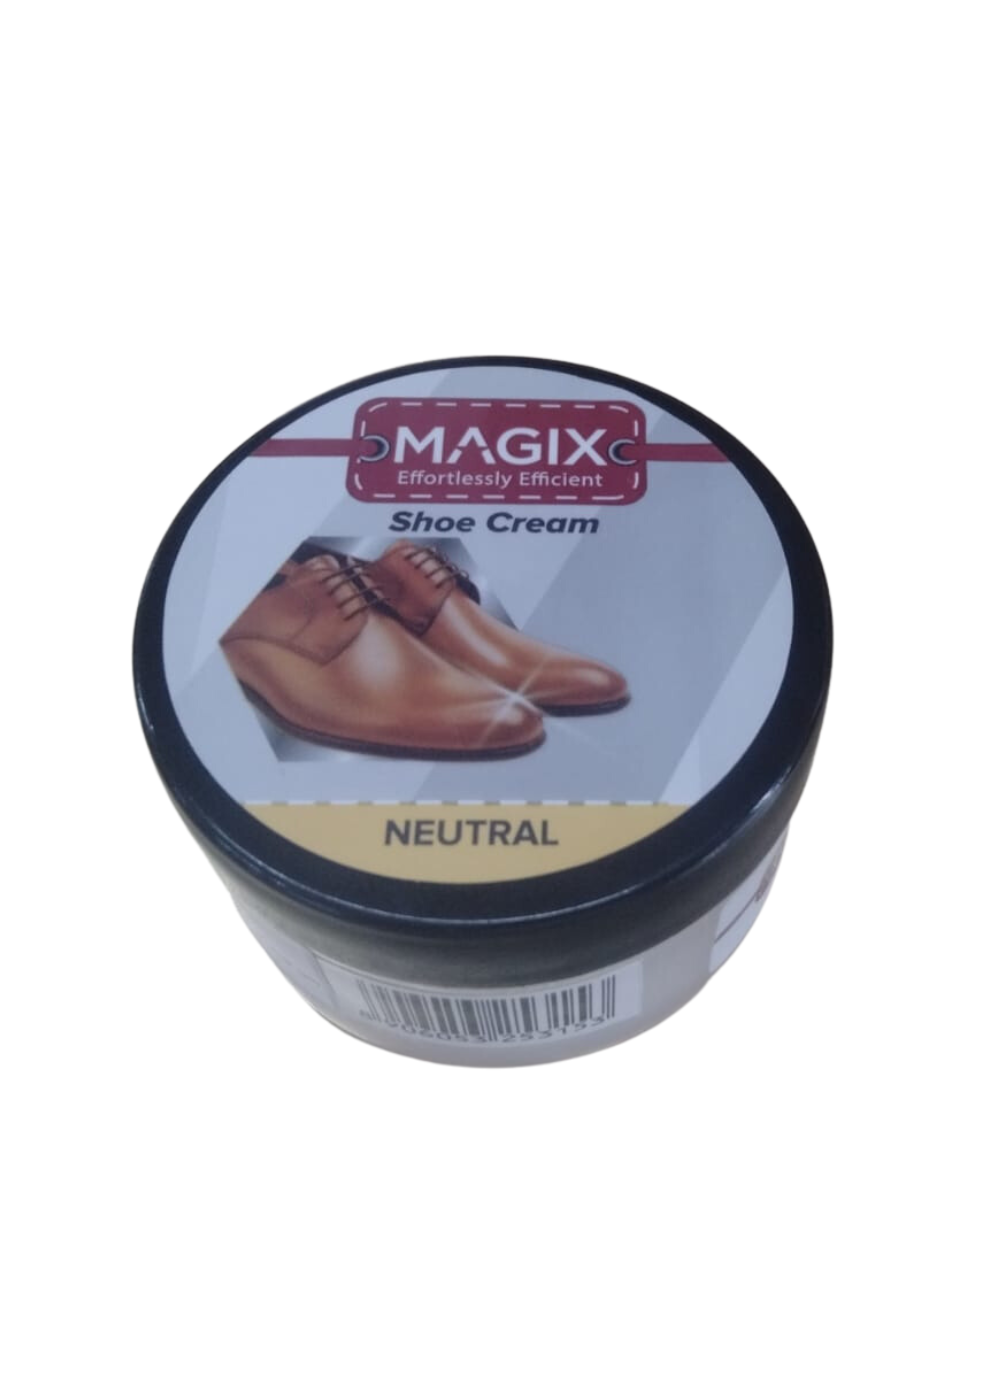 MAGIX Shoe Cream